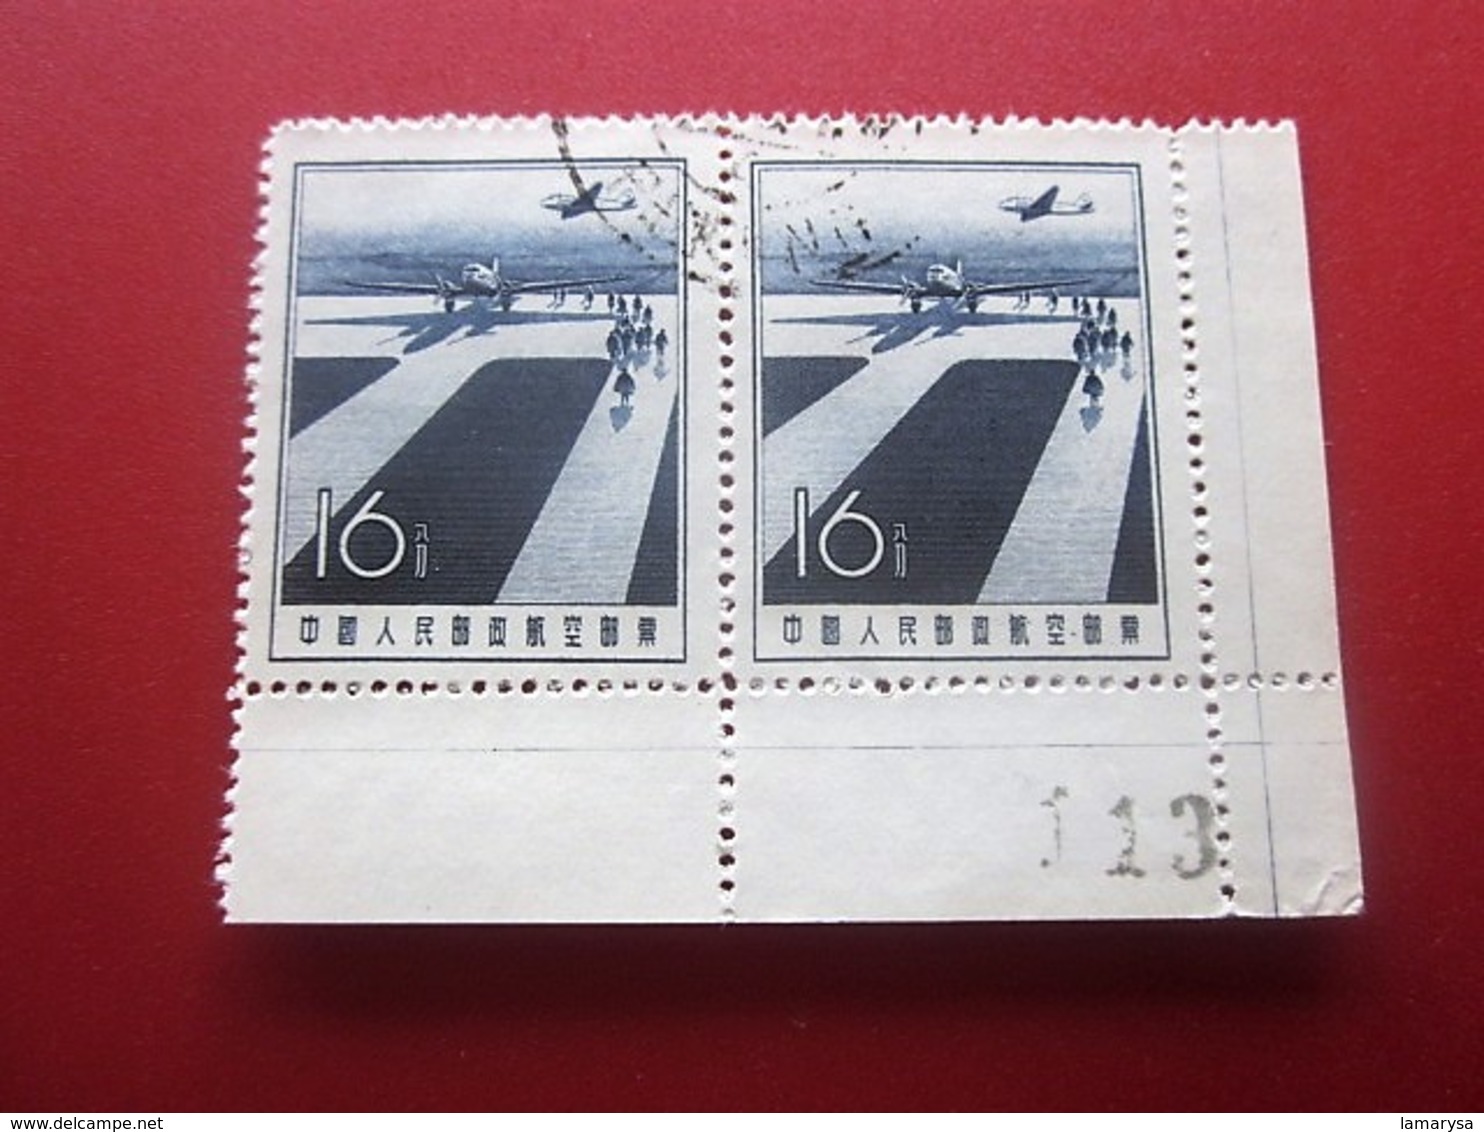 Chine Bloc 2 Timbres-Stamps-République Populaire-Poste Aérienne-Asia China-Popular Republic Airmail-亚洲中国第4区邮票热门共和国航空邮件 - Corréo Aéreo